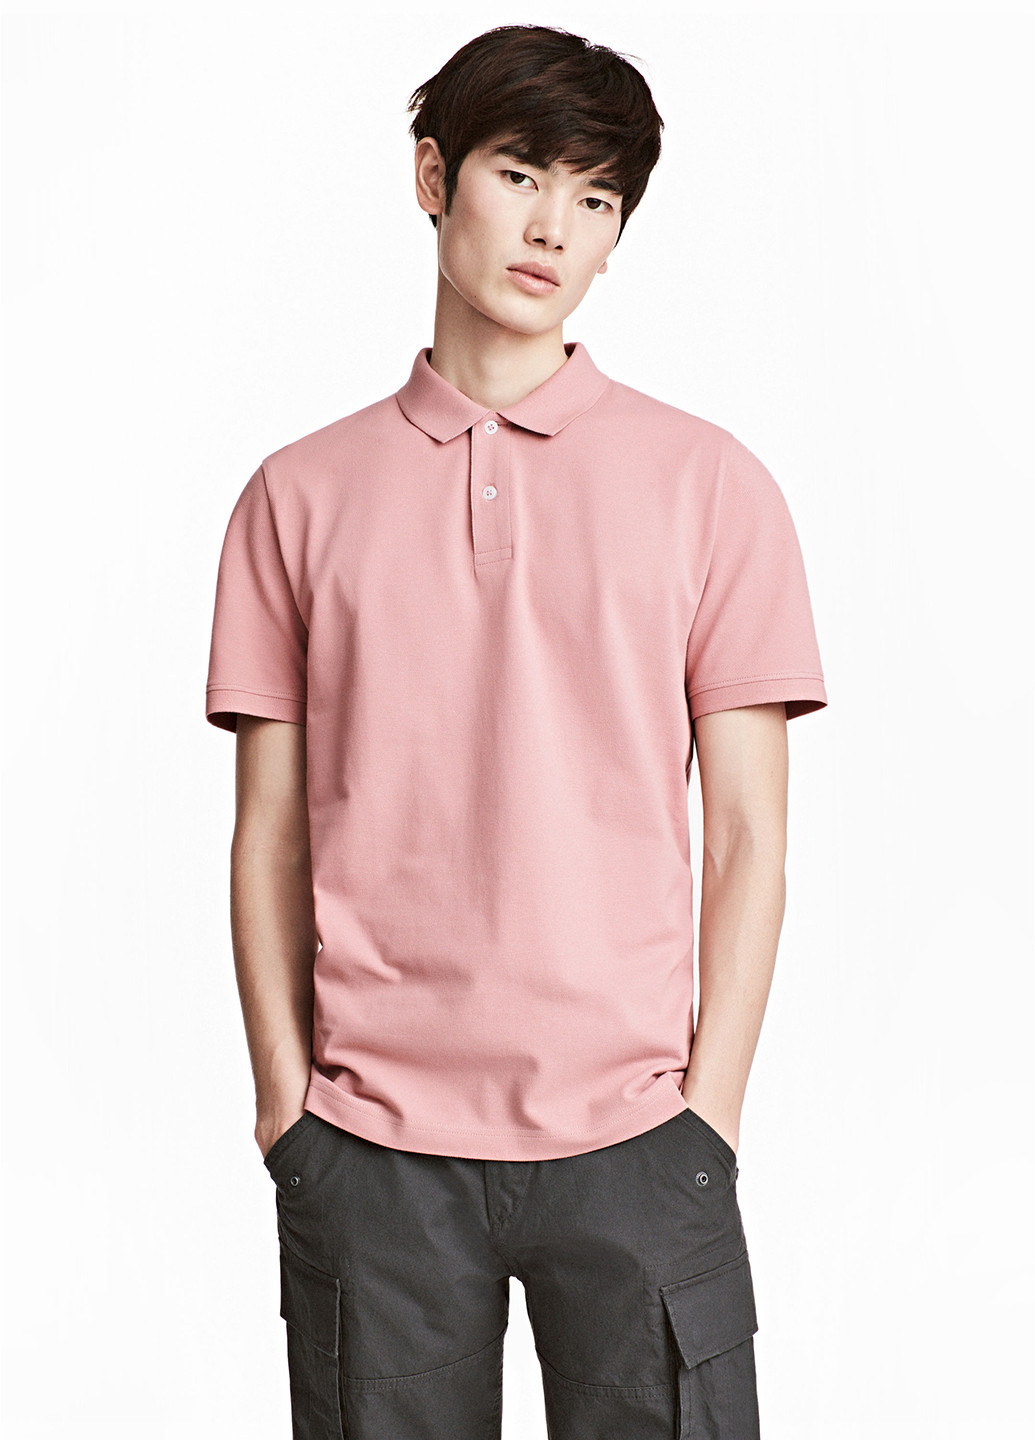 Розовая футболка-поло для мужчин H&M однотонная